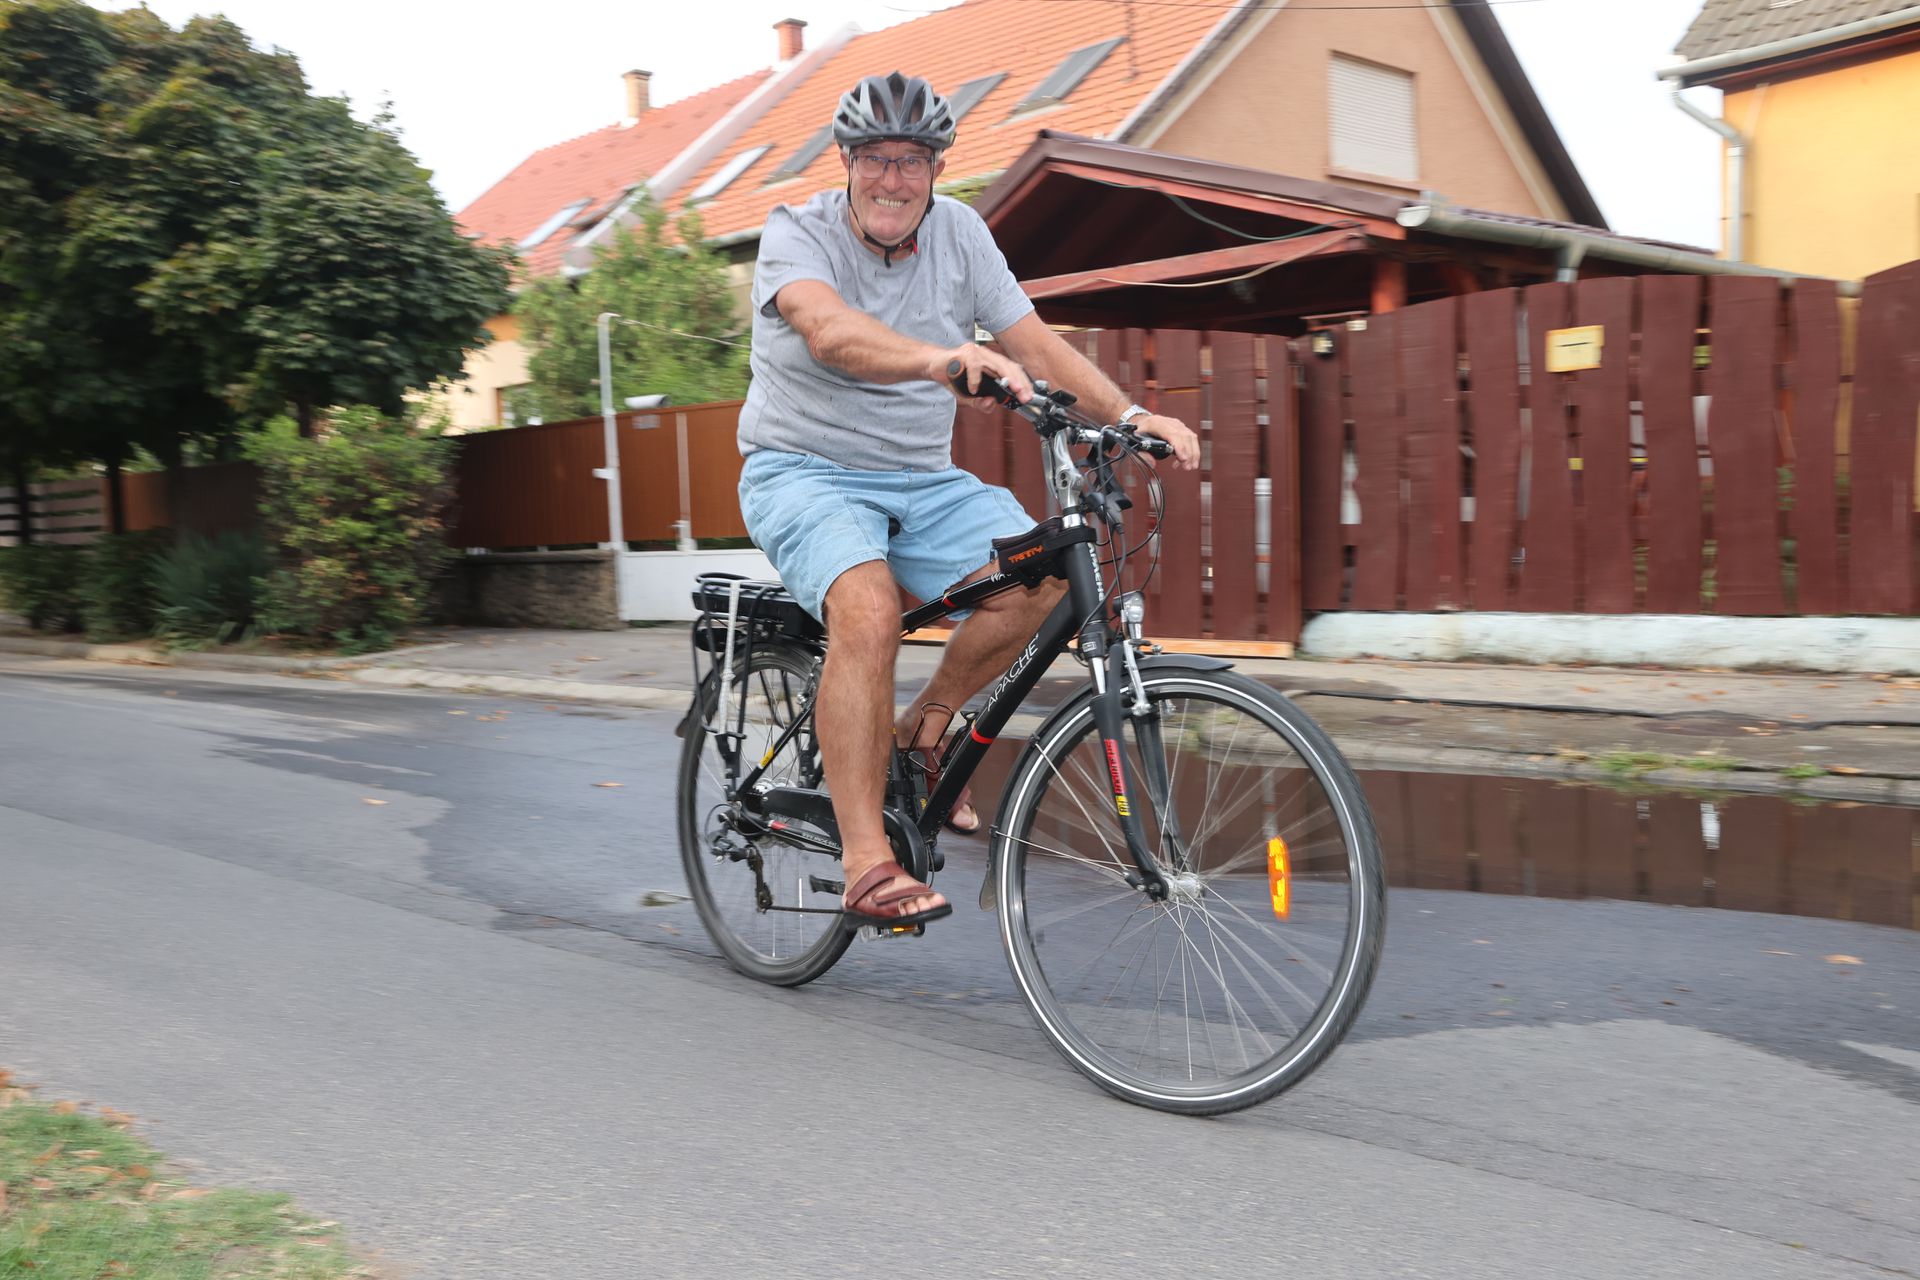 Weimper István szeret biciklizni, gyakran megtesz ötven kilométert is a nyeregben